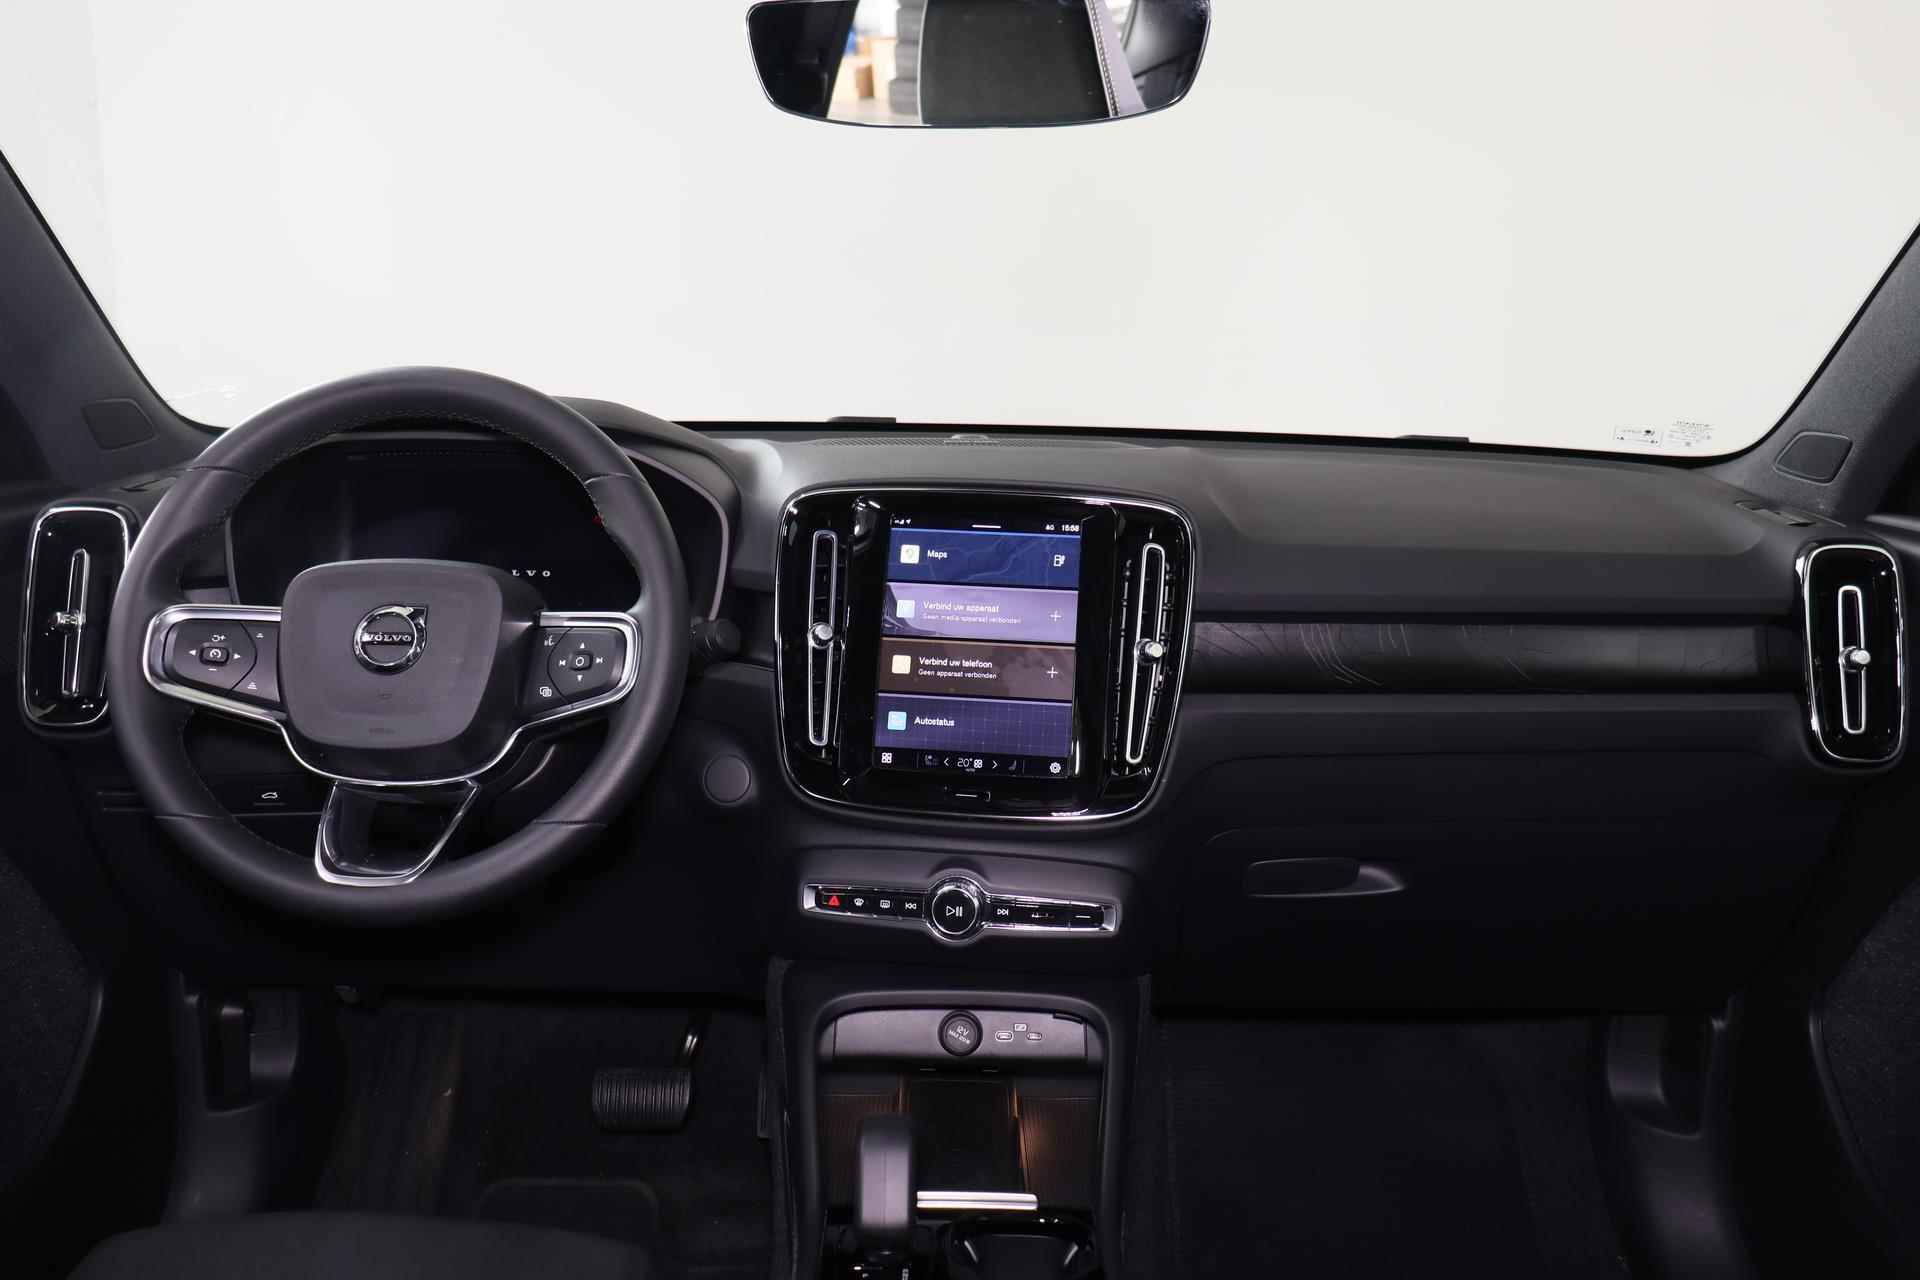 Volvo C40 Recharge Ultimate 69 kWh - Panoramadak - IntelliSafe Assist & Surround - Harman/Kardon audio - Verwarmde voorstoelen & stuur - Parkeersensoren voor & achter - Elektr. bedienb. voorstoelen met links geheugen - Draadloze tel. lader - Warmtepomp - Extra getint glas - 20' LMV - 24/25